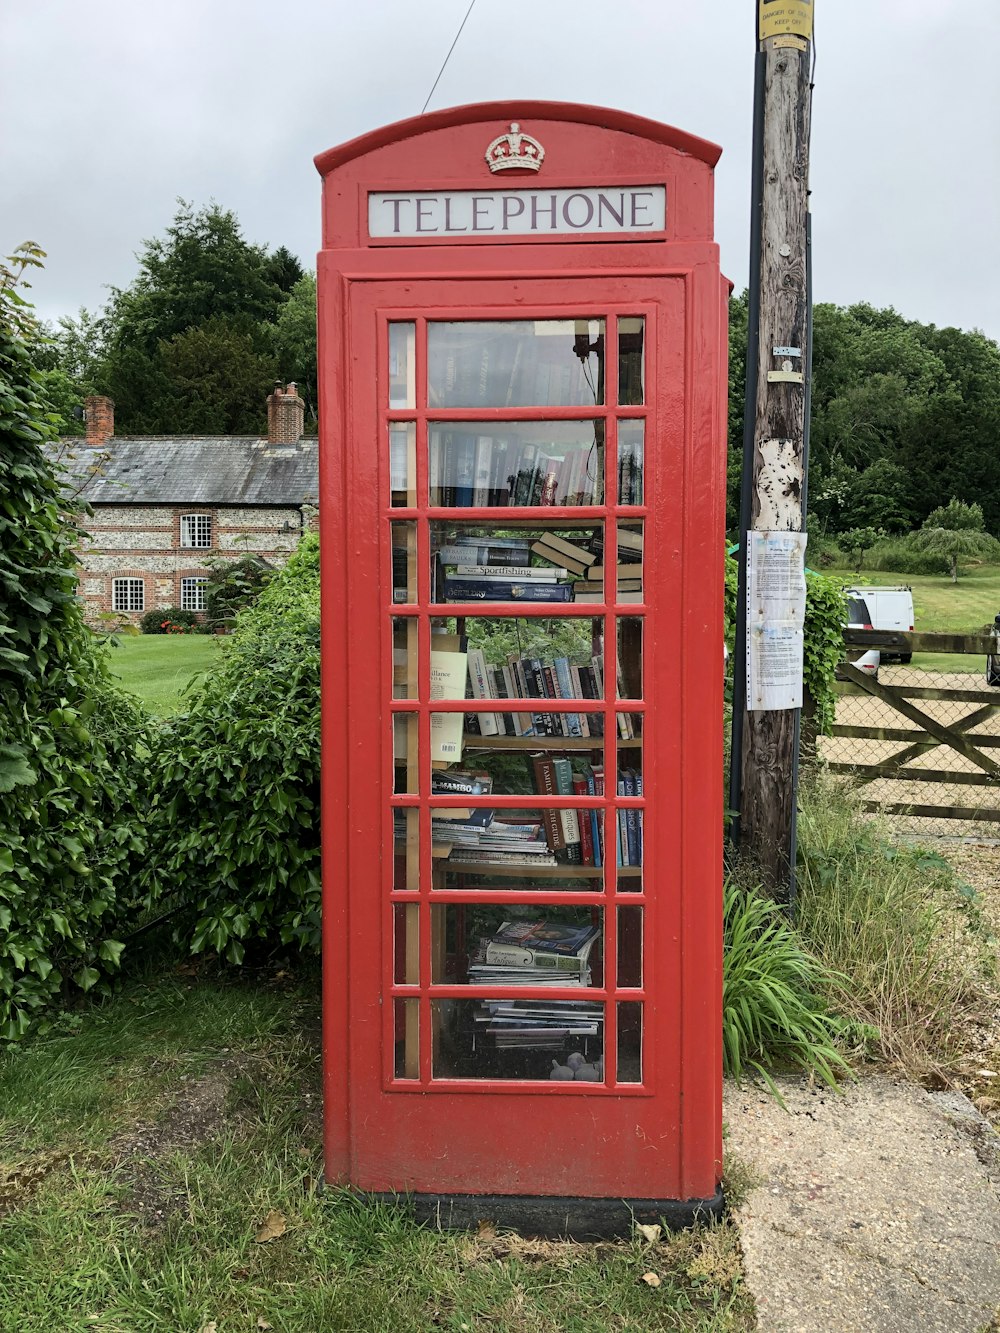 cabine téléphonique rouge près de l’herbe verte pendant la journée